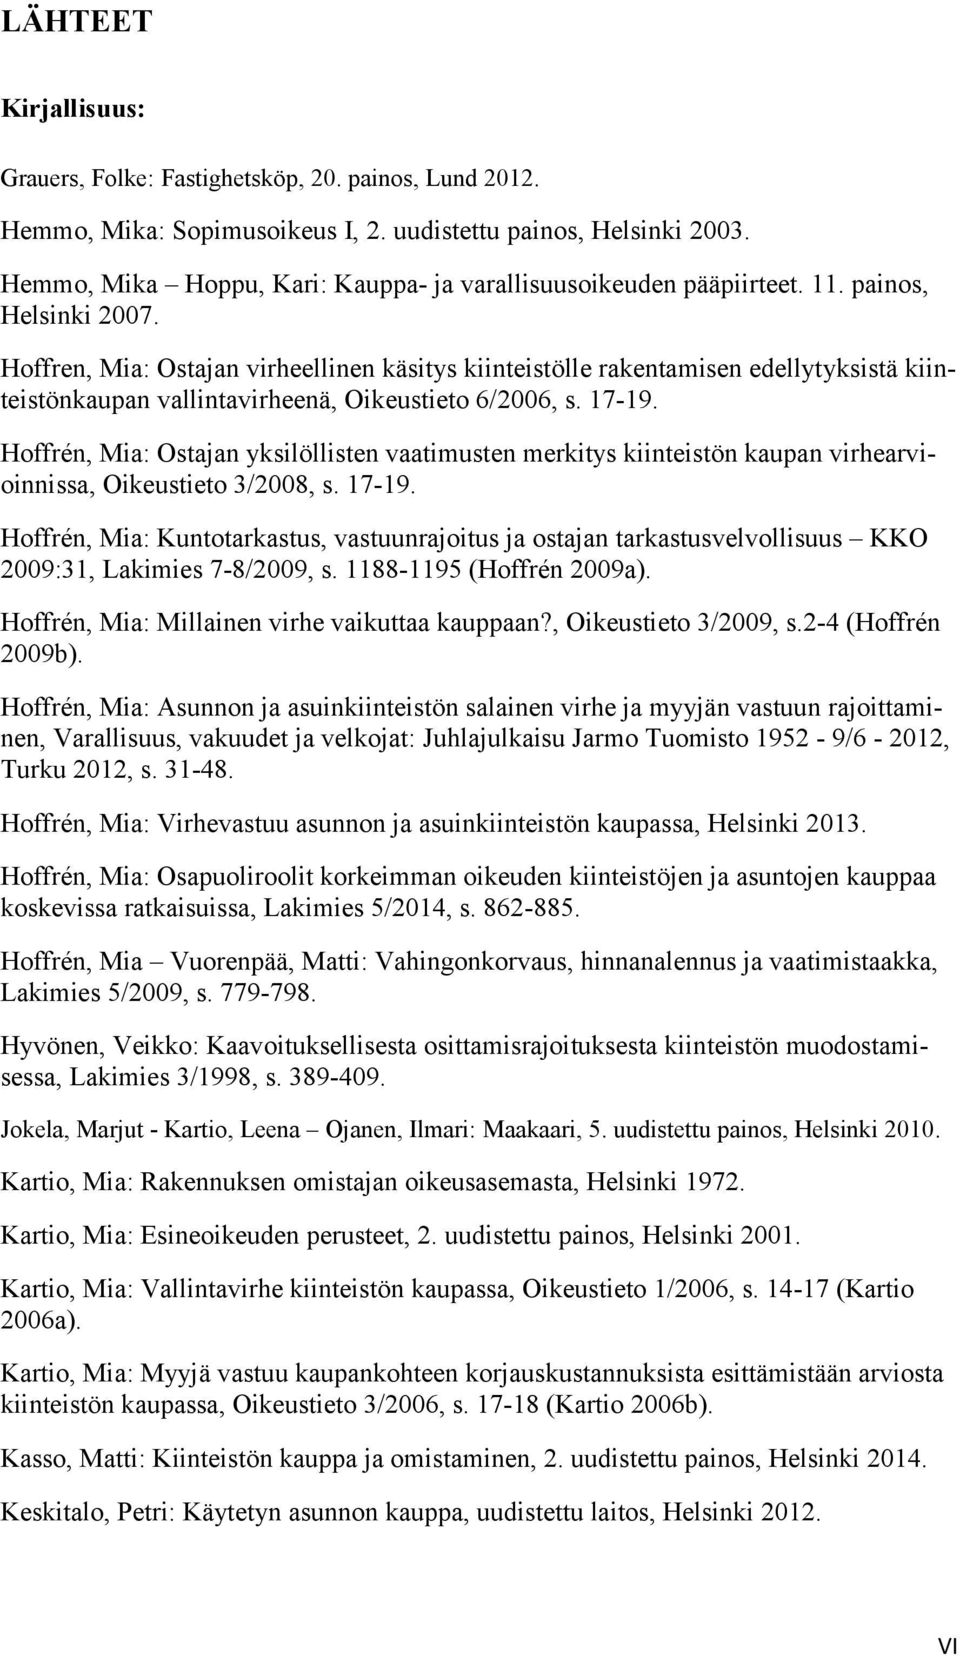 Hoffren, Mia: Ostajan virheellinen käsitys kiinteistölle rakentamisen edellytyksistä kiinteistönkaupan vallintavirheenä, Oikeustieto 6/2006, s. 17-19.